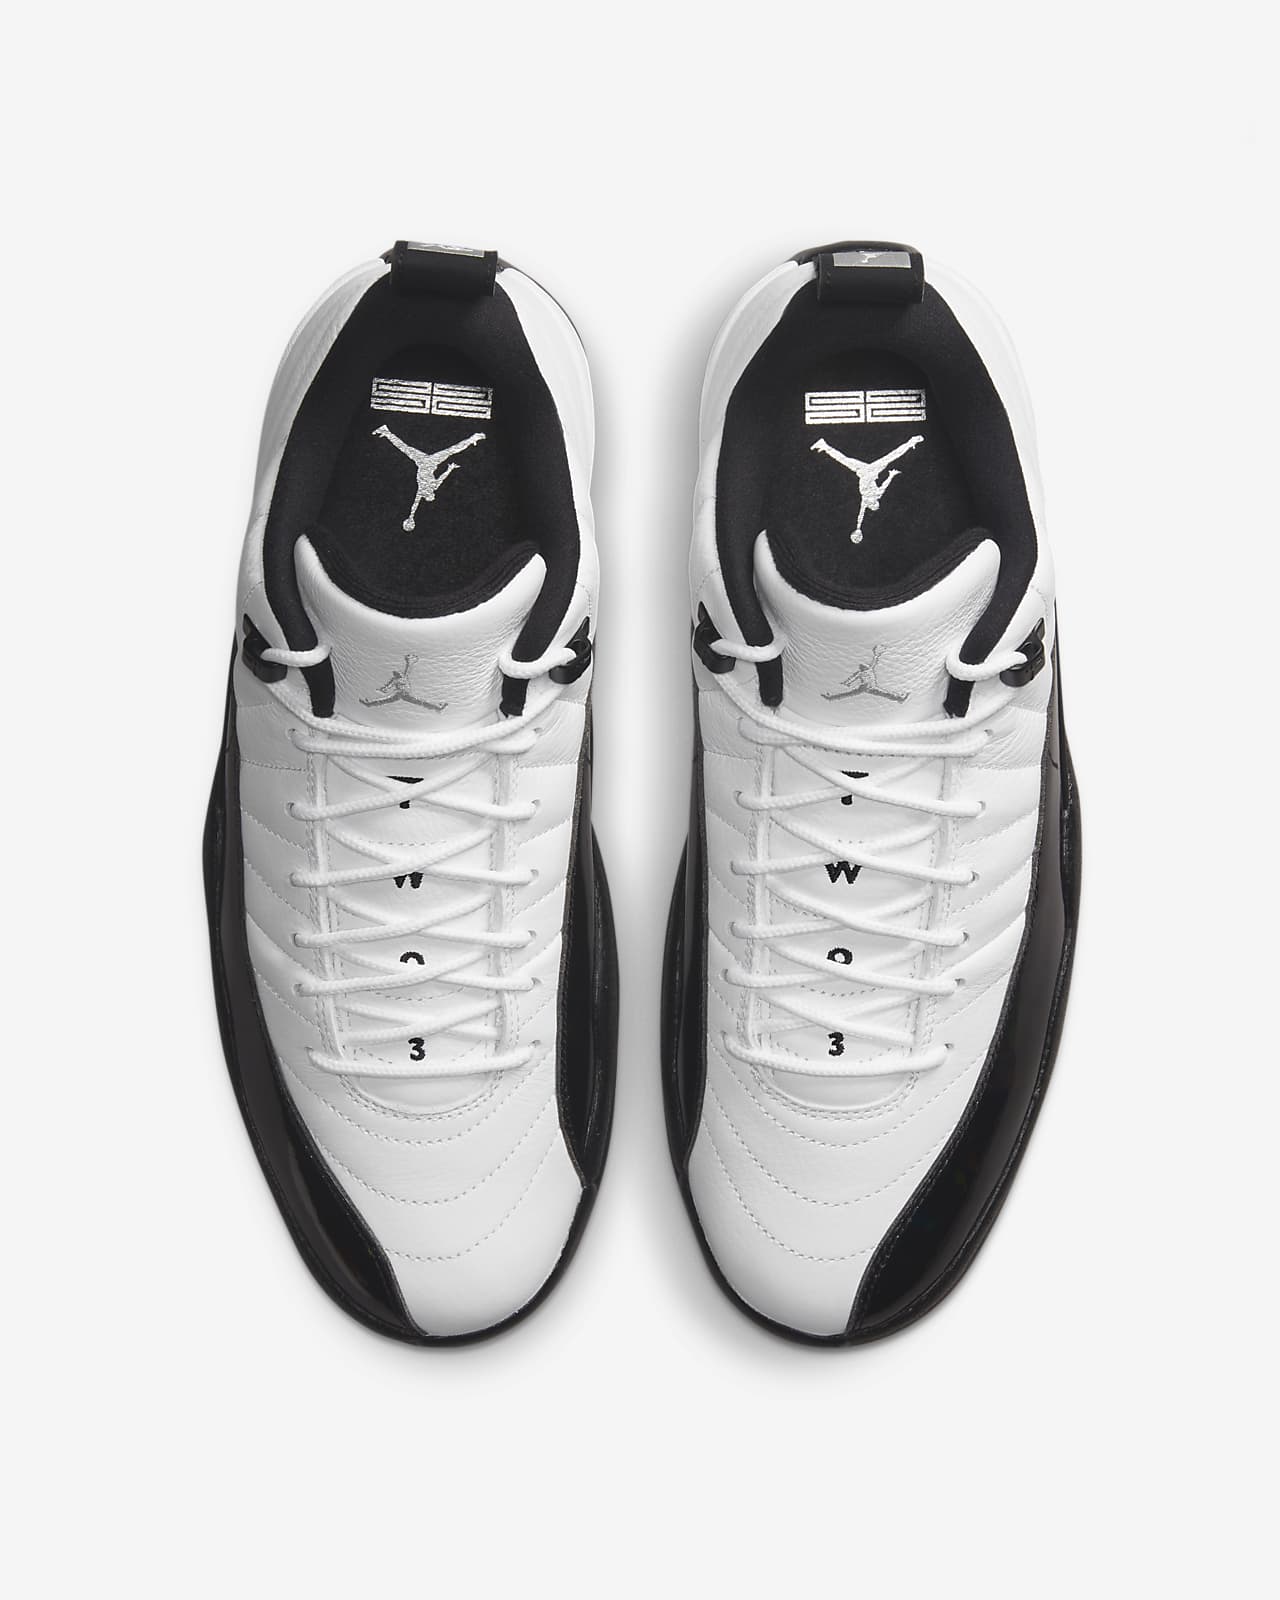 Air Jordan 12 men's nike air jordan xii shoes Retro Low Men's Shoes. Nike.com